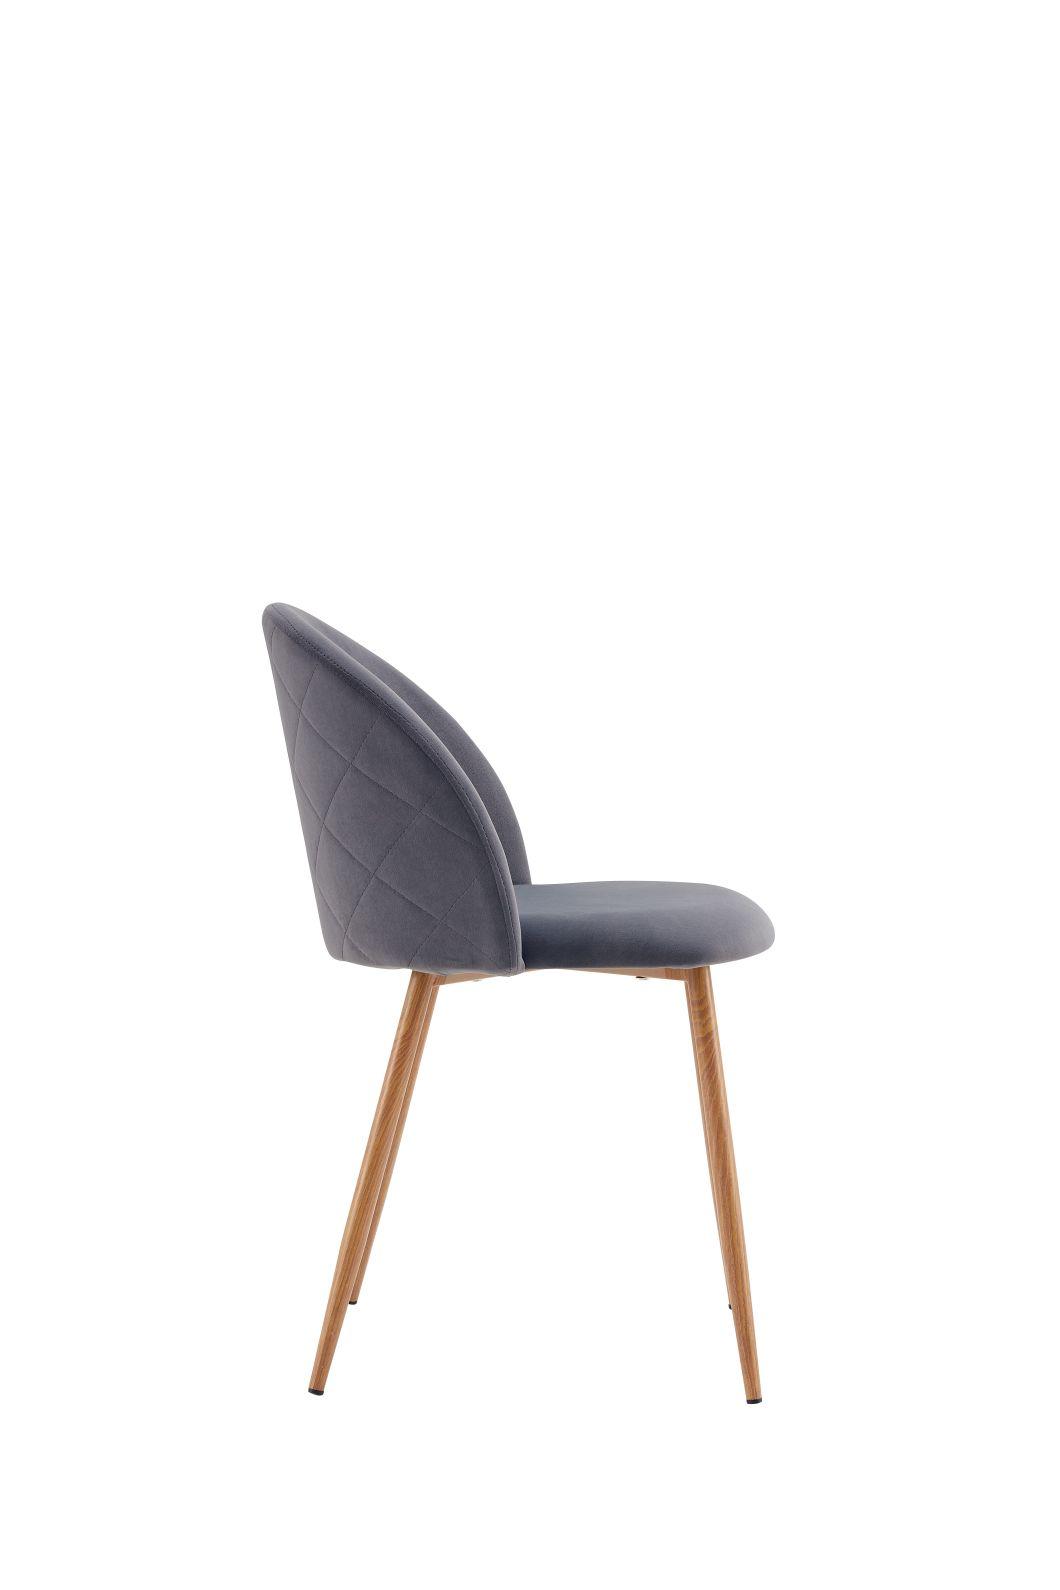 Modern Home Furniture Velvet Fabric Wooden Leg Dining Room Chair